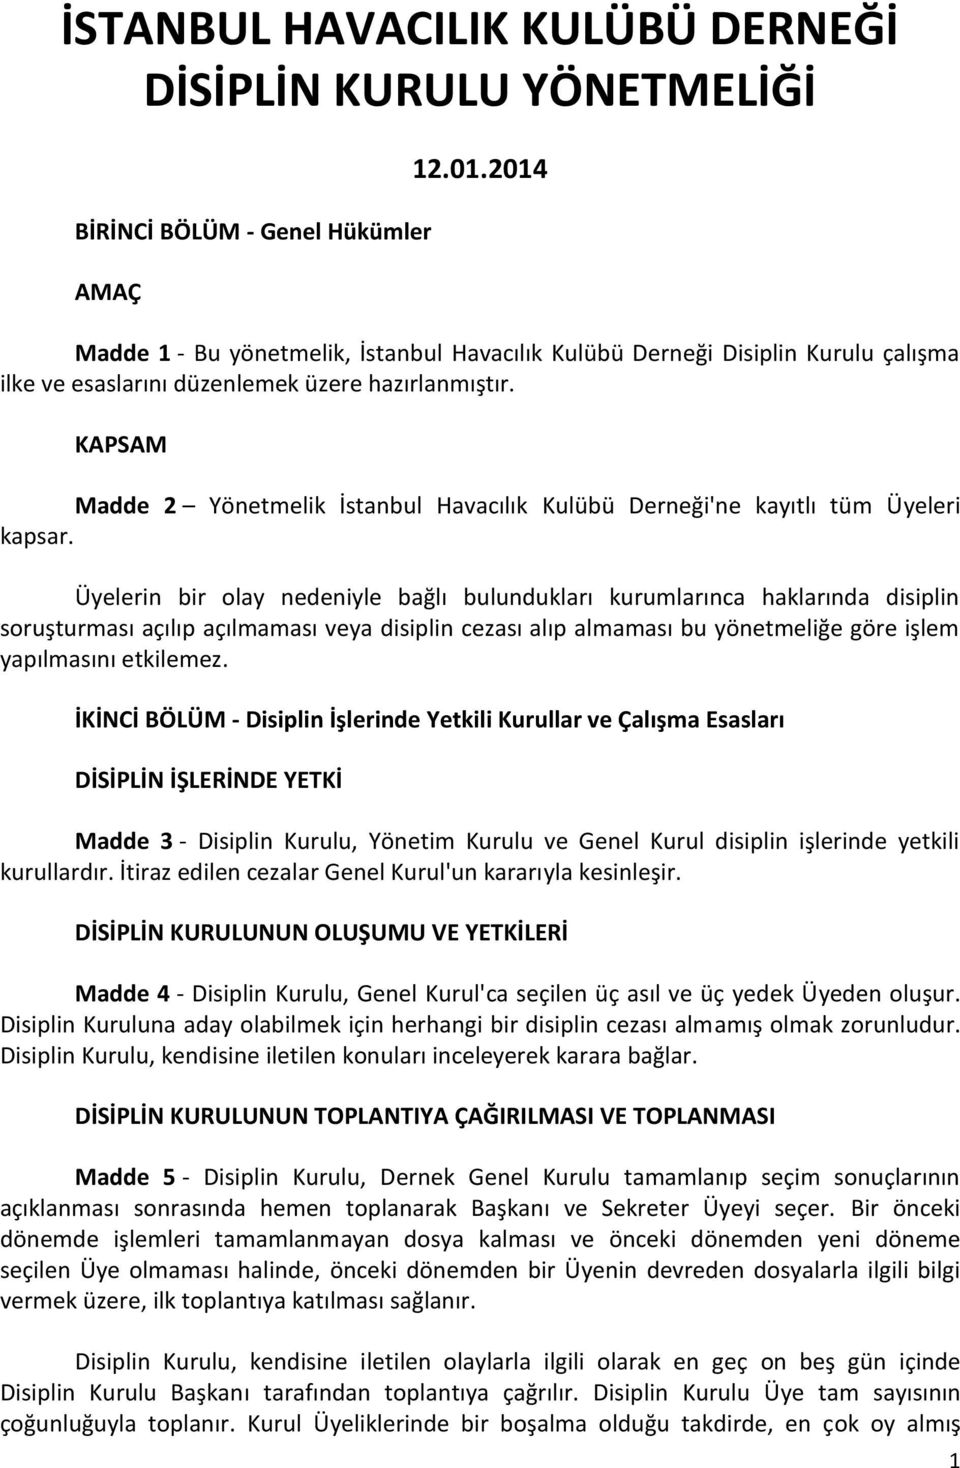 KAPSAM Madde 2 Yönetmelik İstanbul Havacılık Kulübü Derneği'ne kayıtlı tüm Üyeleri kapsar.